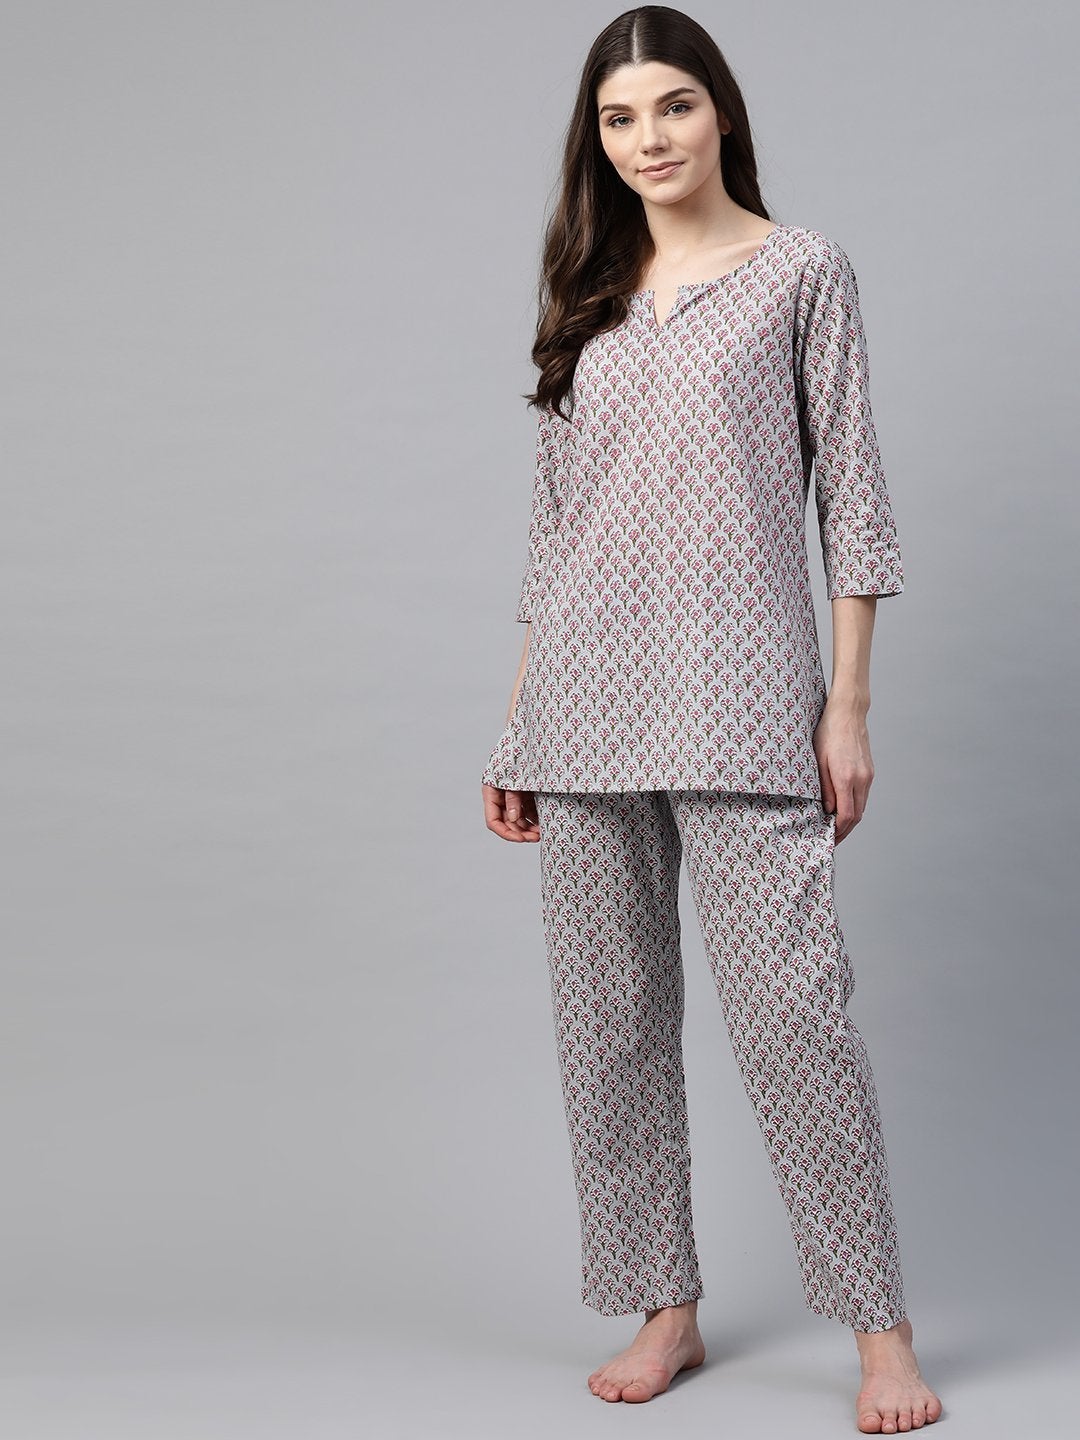 Women's Grey Printed Loungewear/Nightwear - Divena